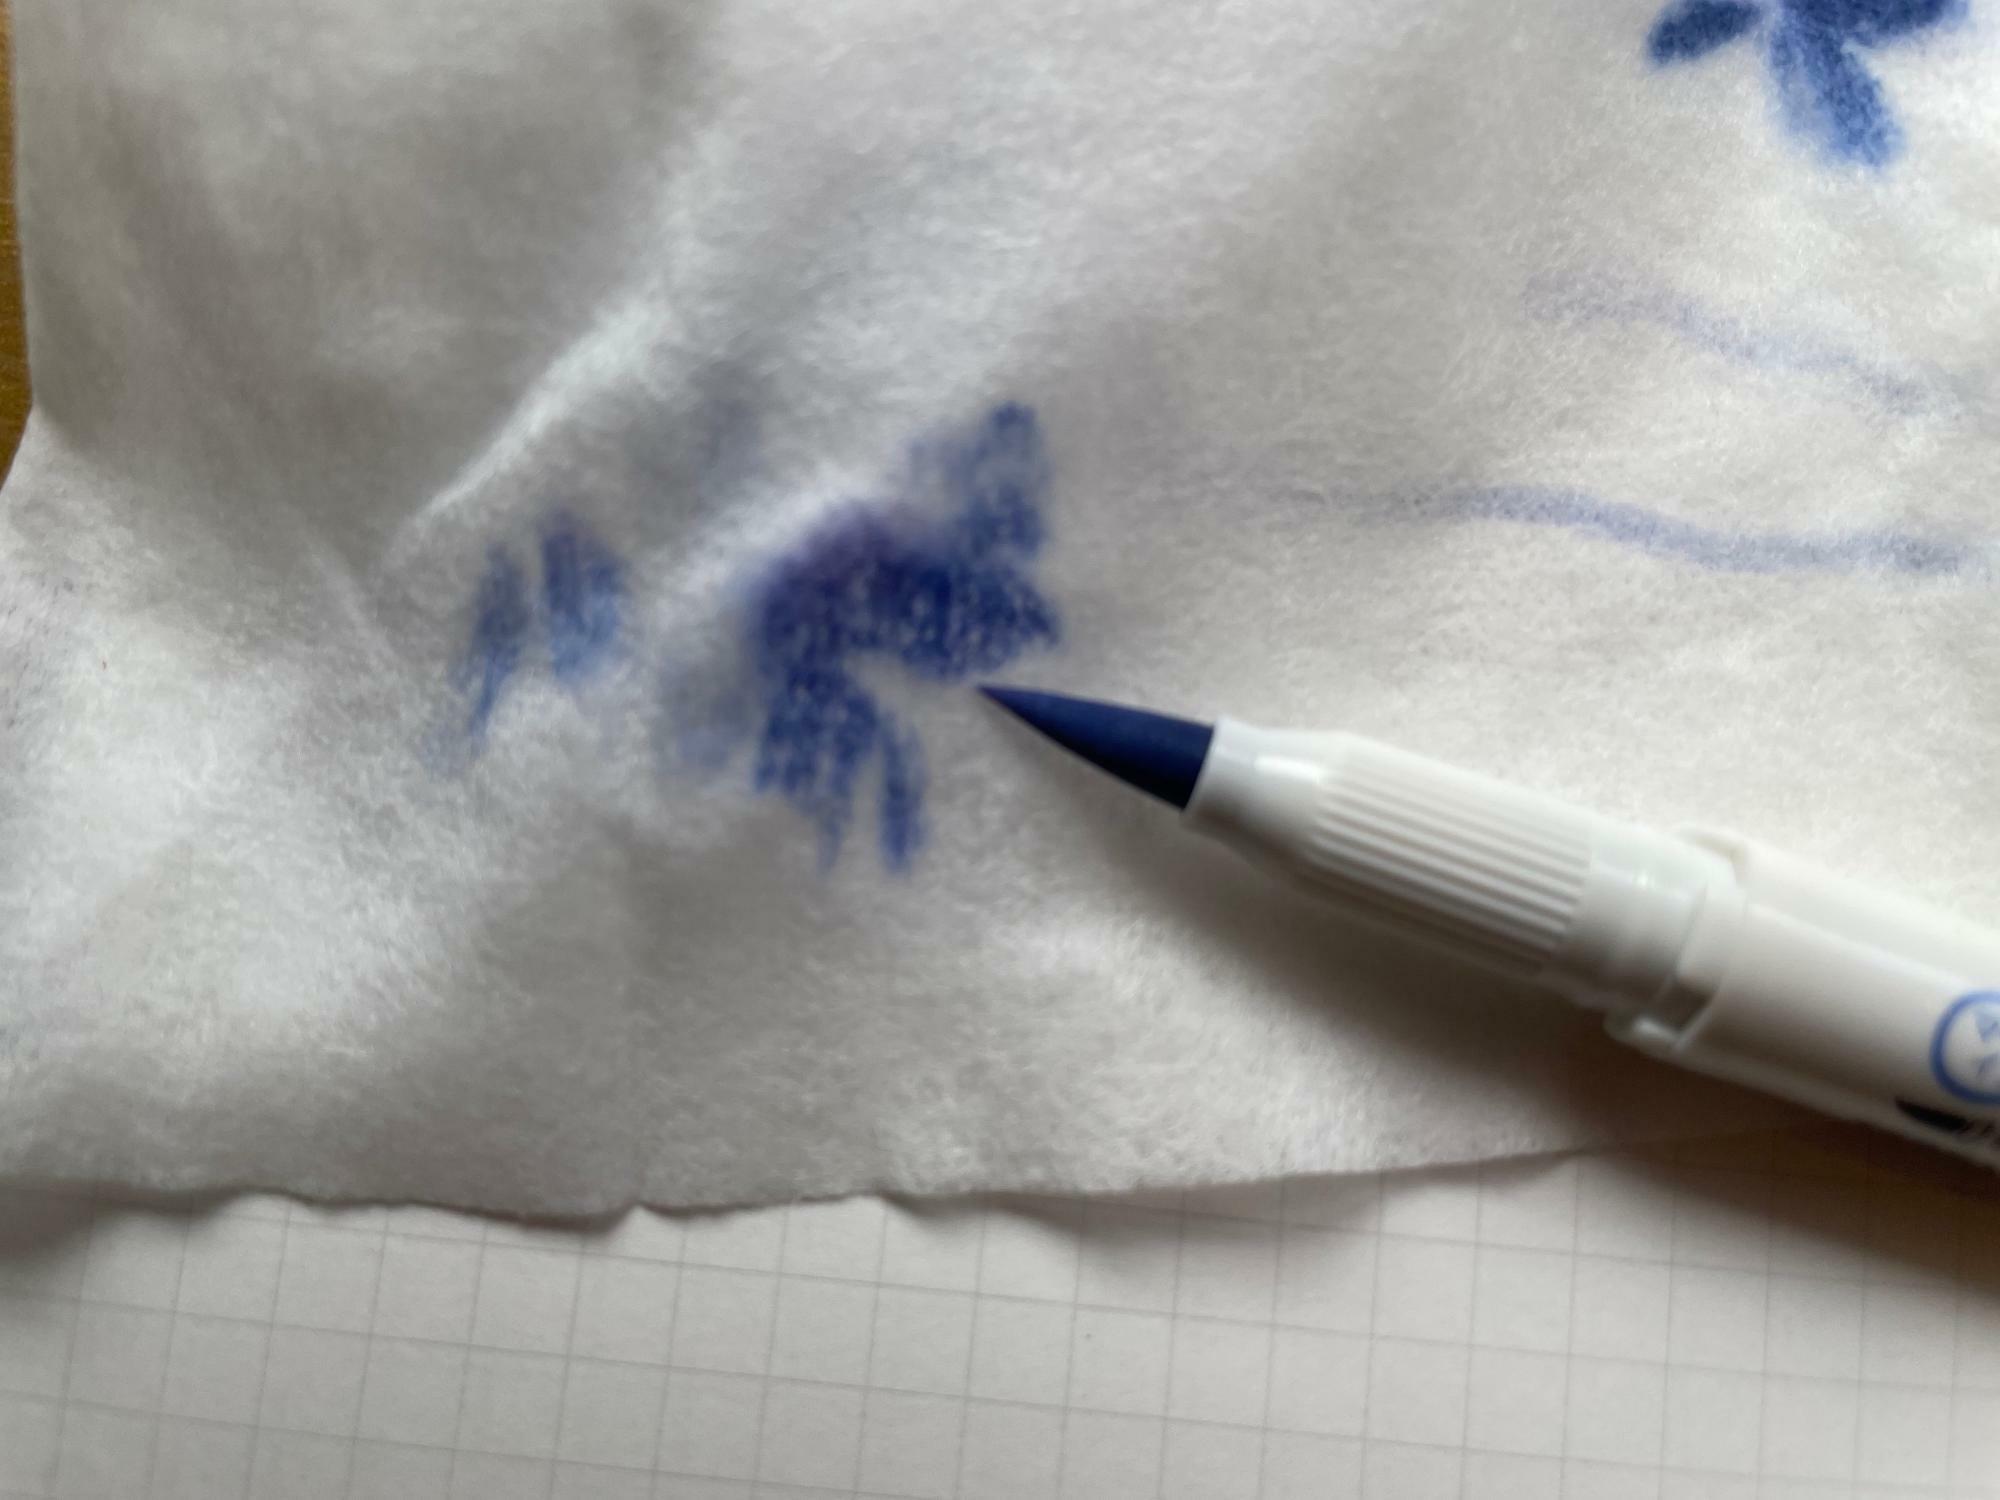 ペン先にインクが残った場合は、ティッシュなどで拭くとよい